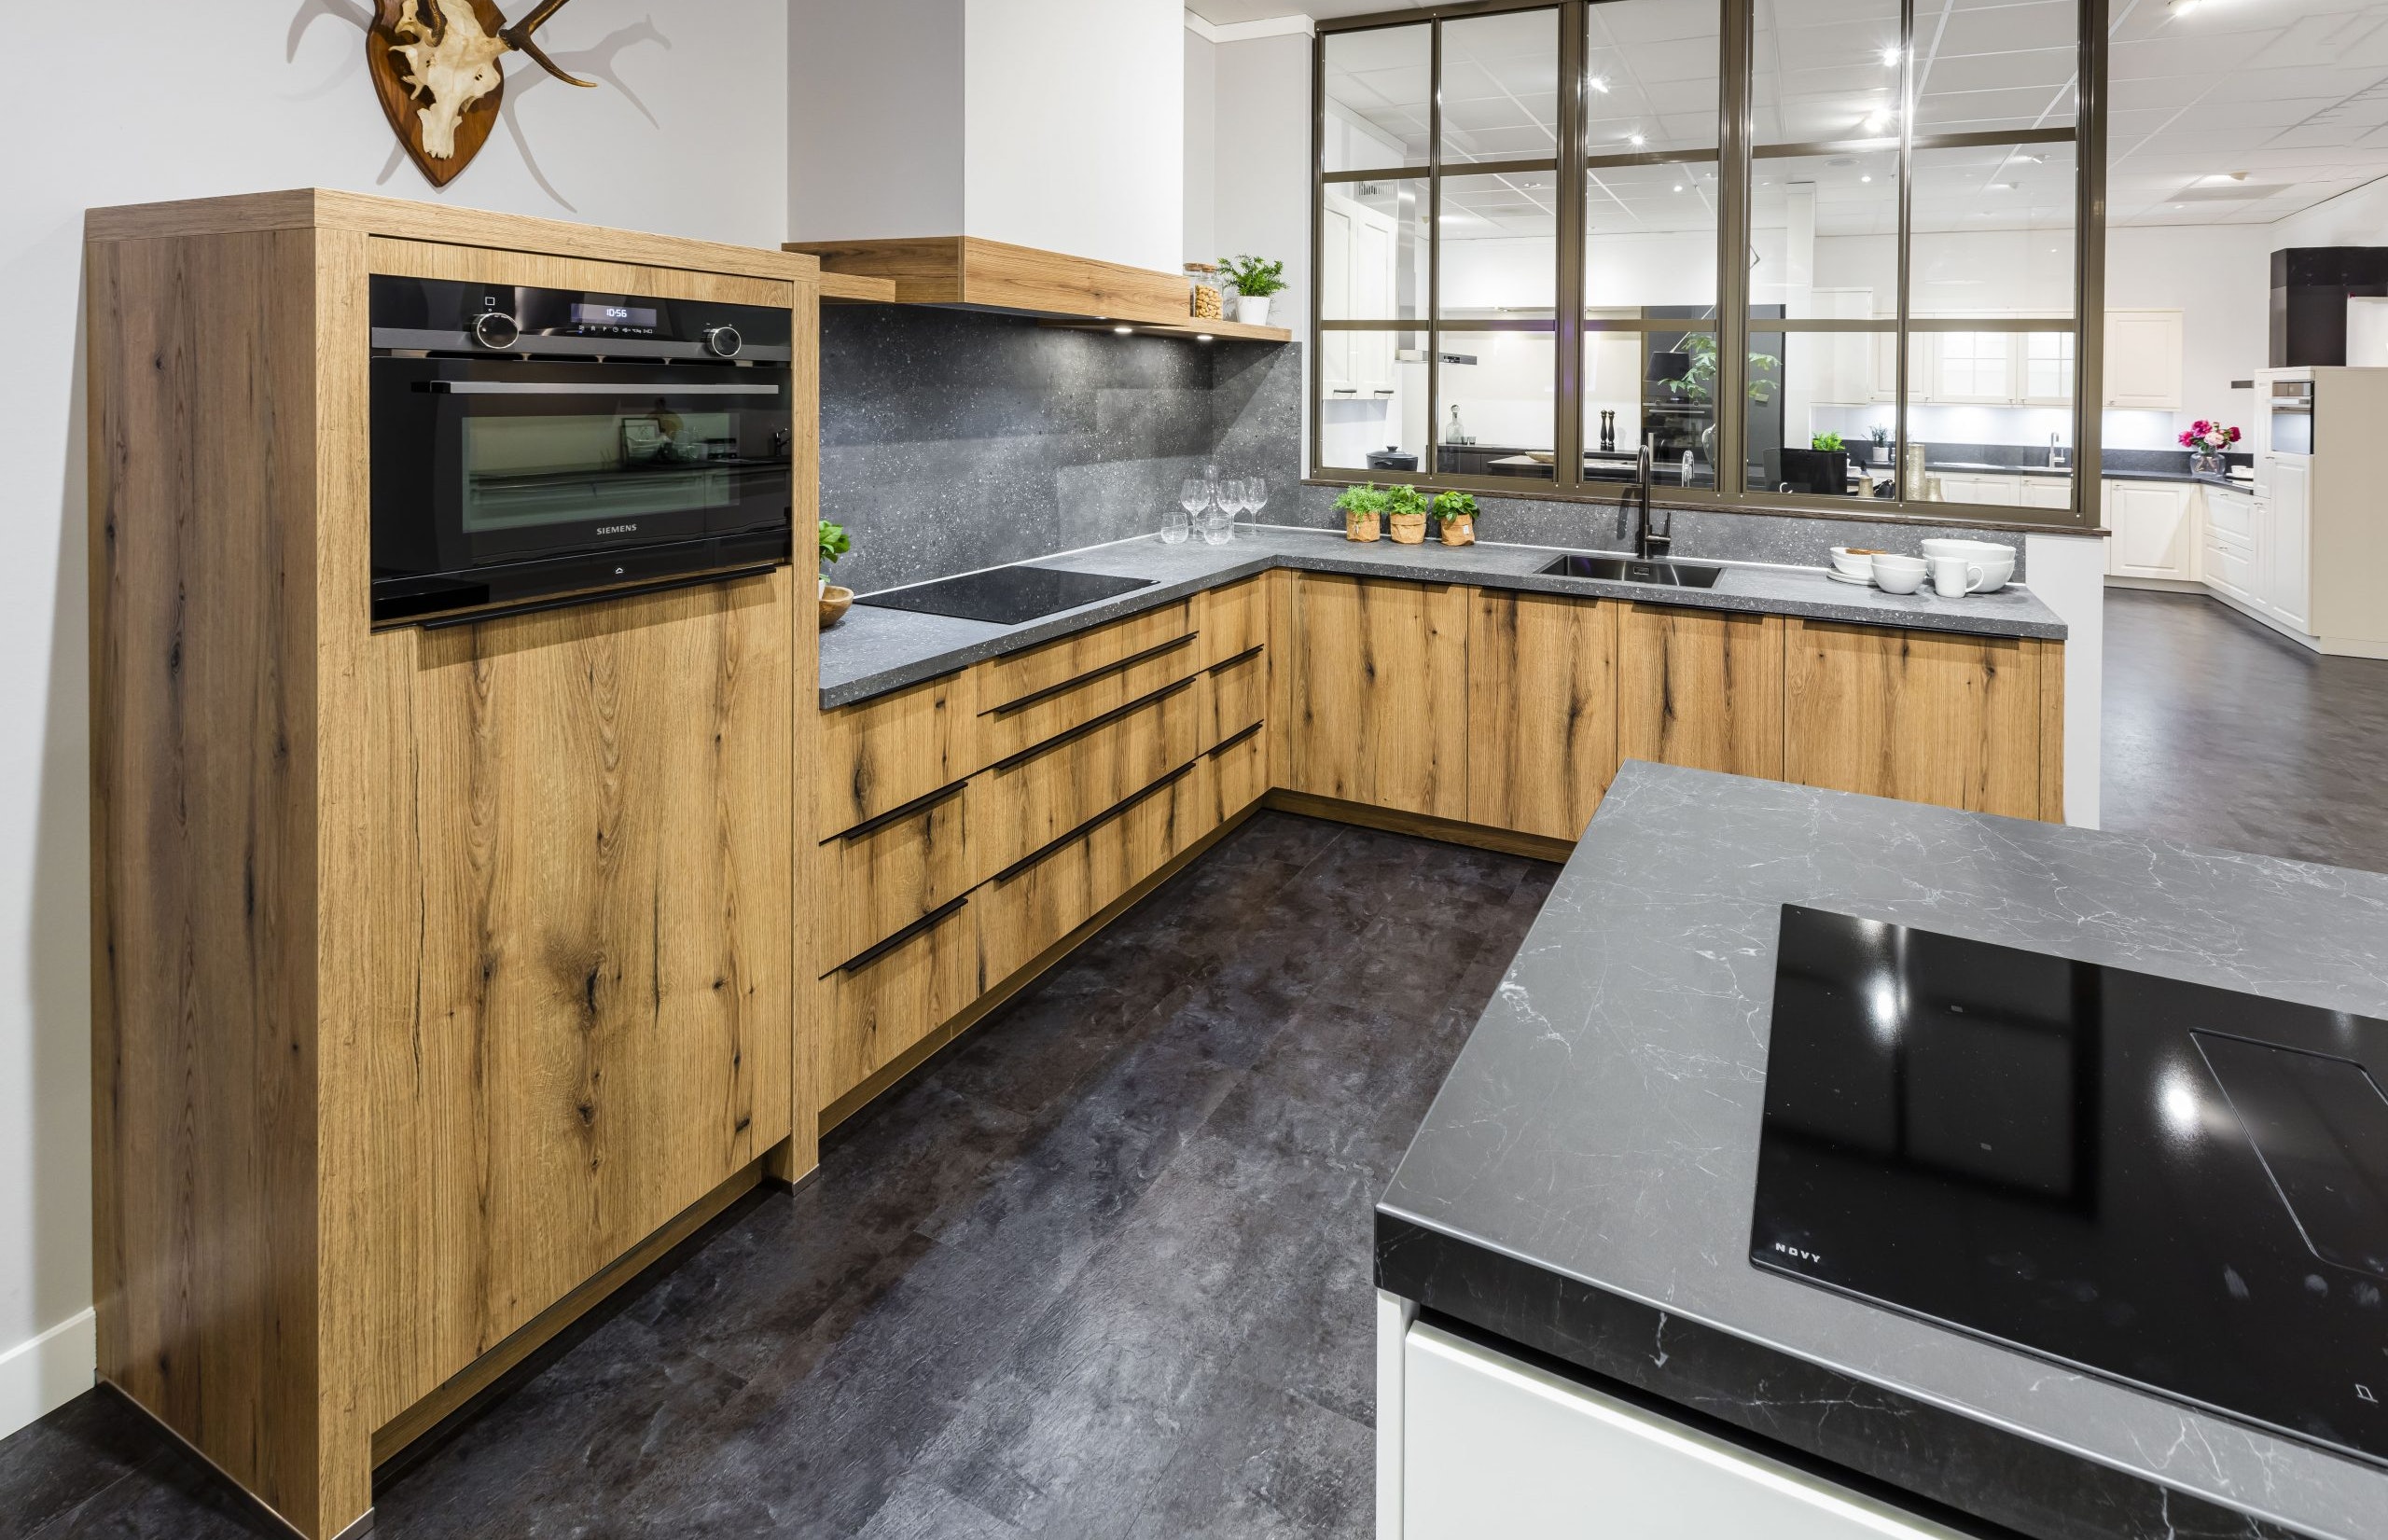 Warme houten keuken met grijs keukenblad